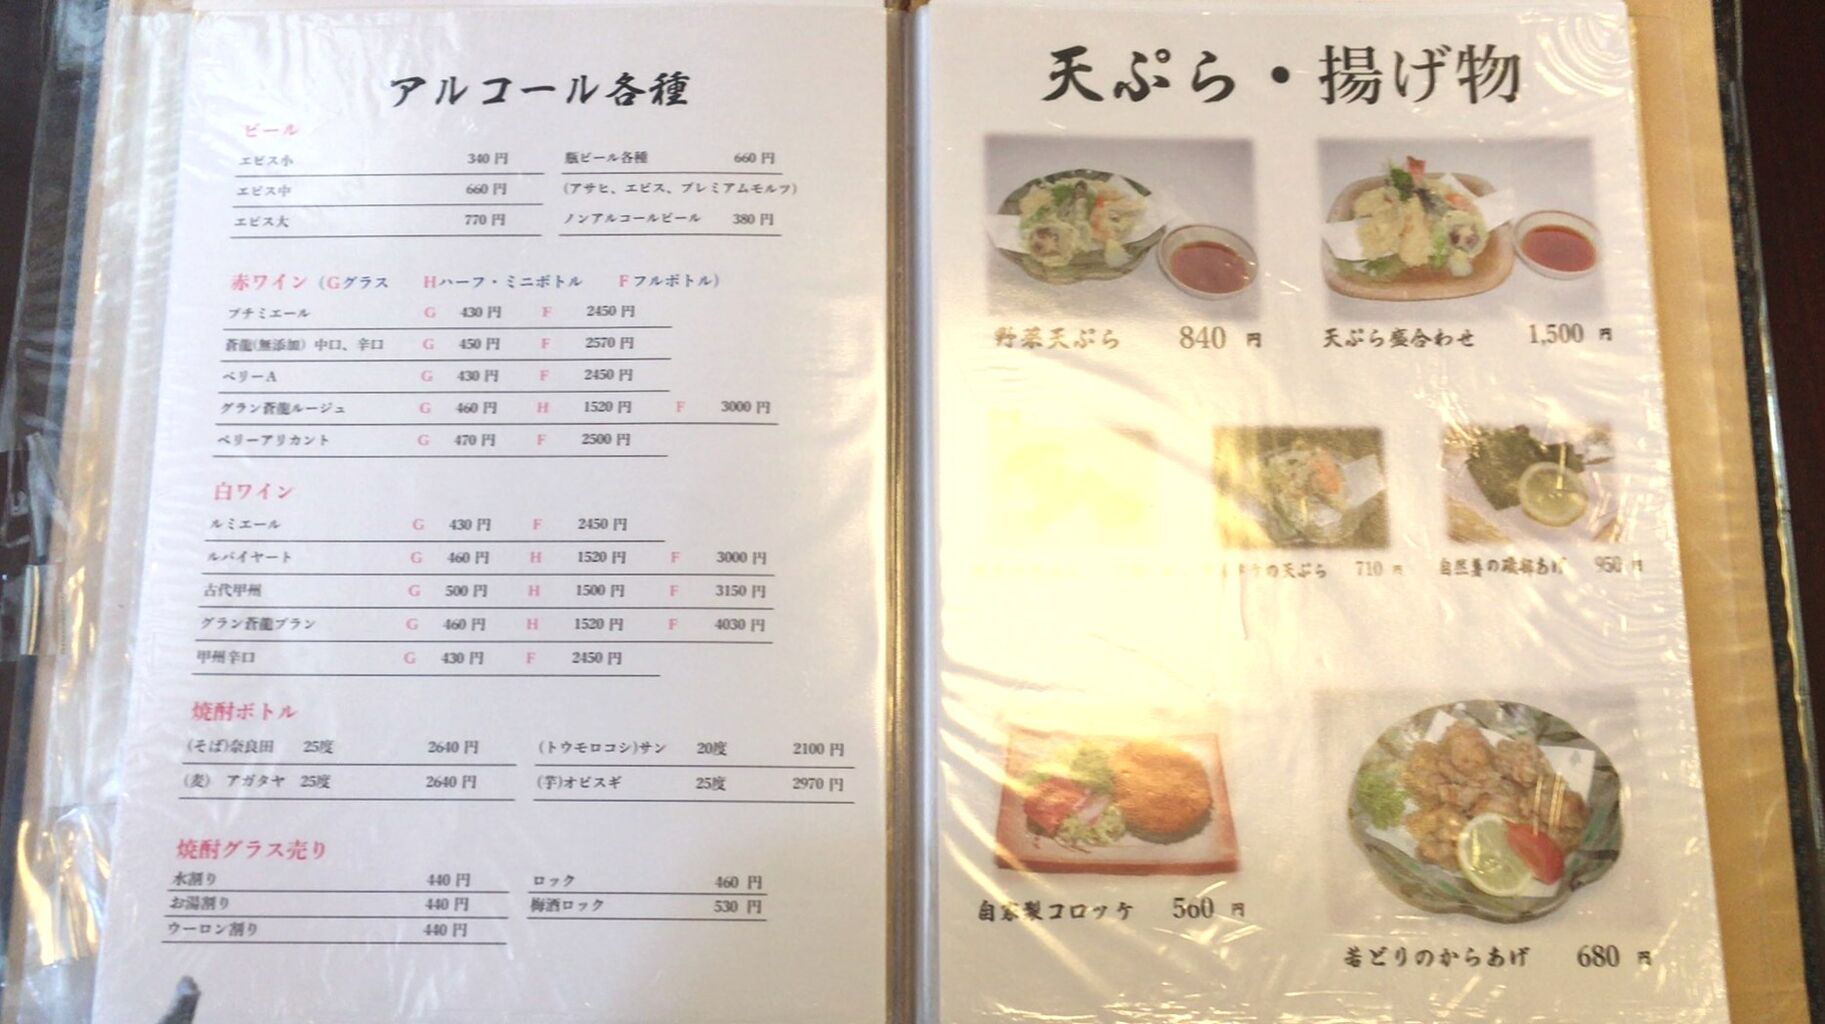 年9月23日 那須高原 ステーキハウス寿楽 本店 美味しいご飯のメモリー